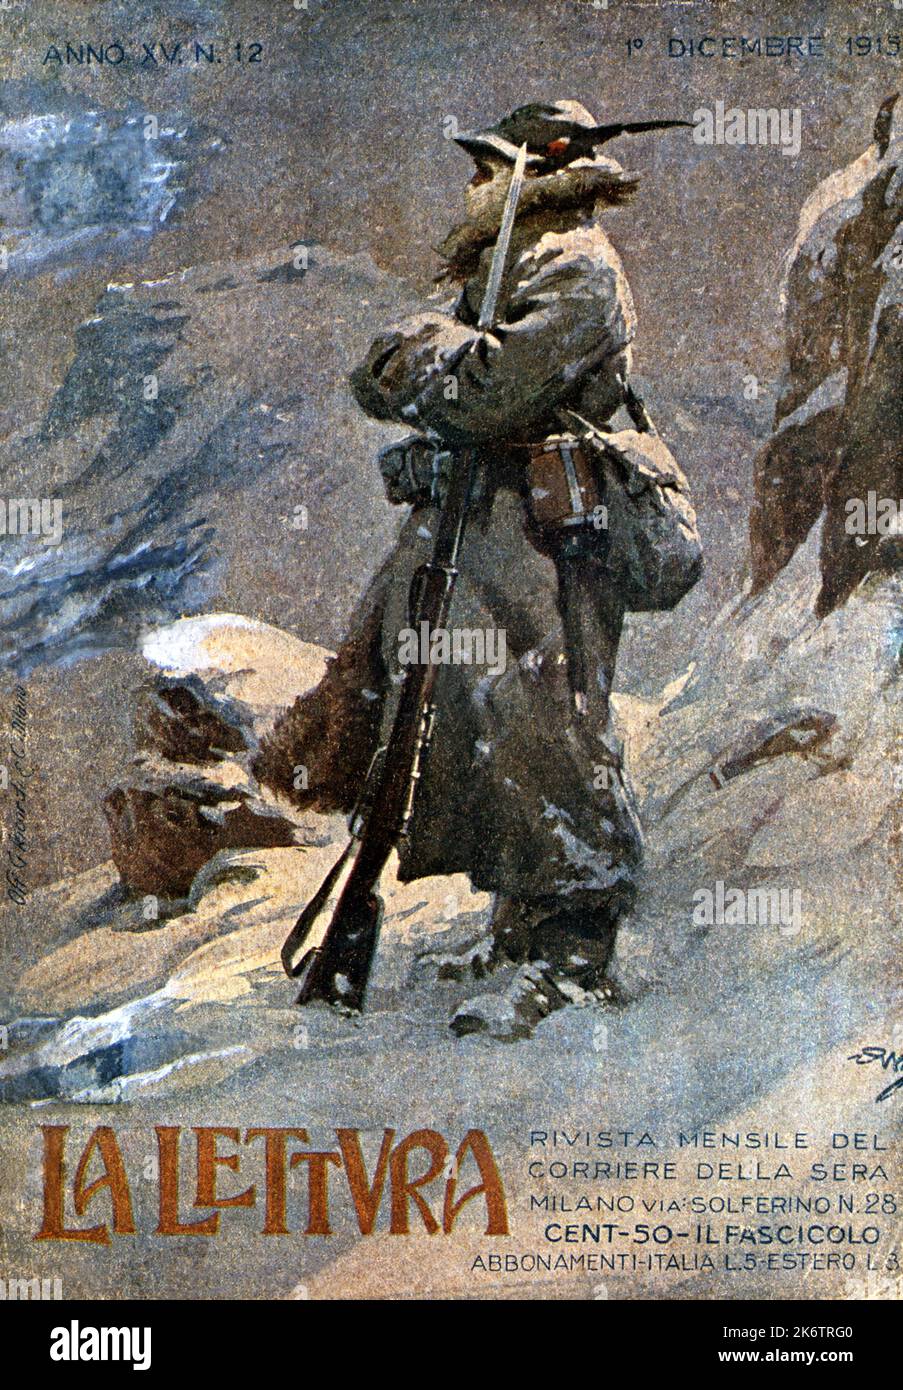 1915 , ITALY : The italian military ALPINI troups  at war during WWI . Cover with Alpino sentinel under the snow on italian magazine LA LETTURA  , 1 december 1915 . Artwork by unknown artist . - ALPINI - ALPINE - ALPINO - PRIMA  GUERRA MONDIALE - First World War - Great War - WWI - miliari soldati italiani -  HISTORY - FOTO STORICHE - PROPAGANDA - ILLUSTRAZIONE - ILLUSTRATION  - copertina rivista giornale illustrato - battaglia - battle - sentinella - neve ---  Archivio GBB Stock Photo